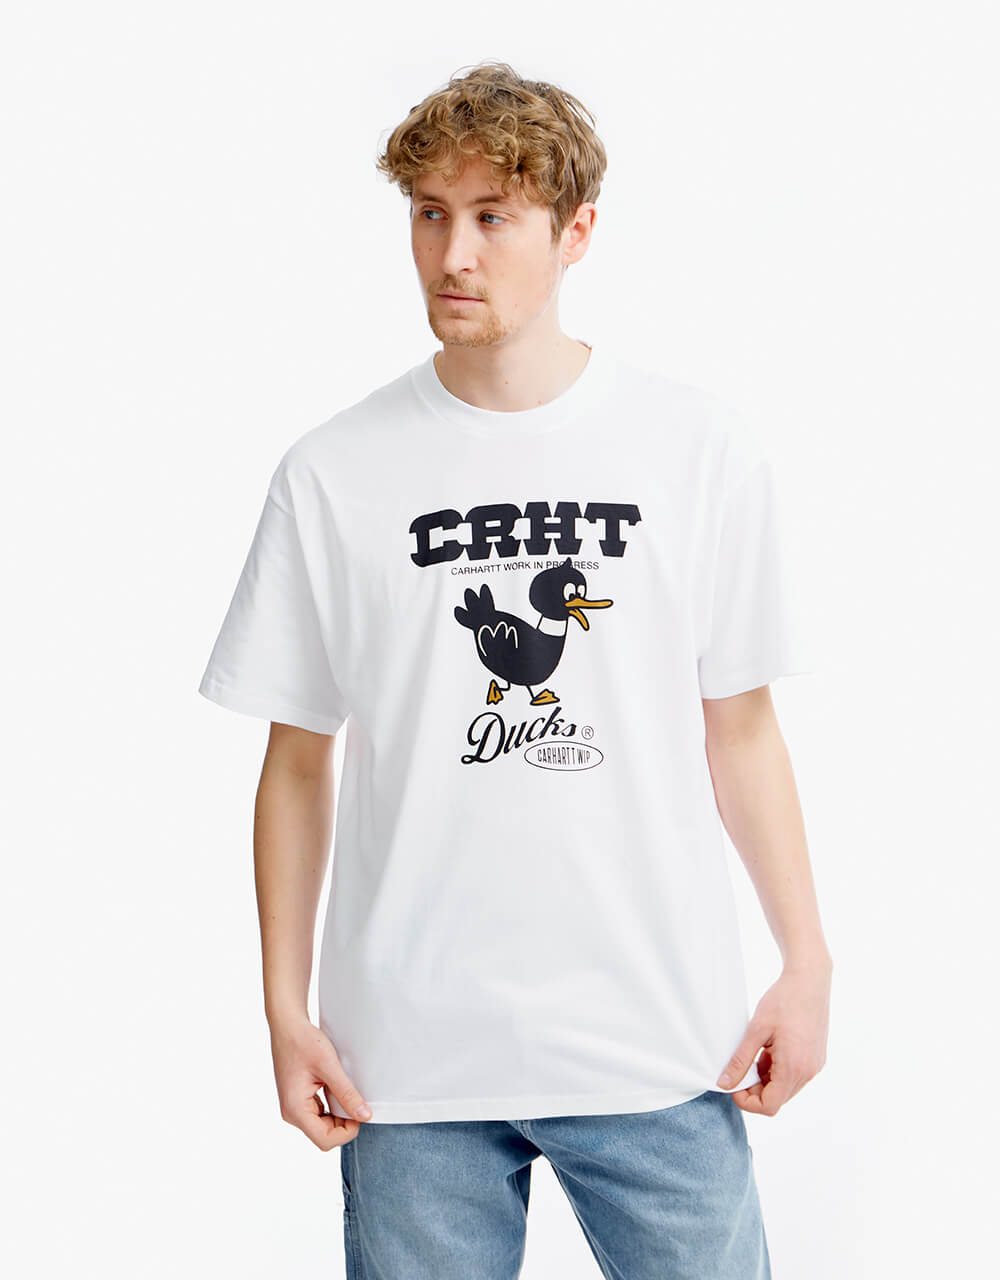 Carhartt WIP S/S CRHT Ducks T-Shirt - White